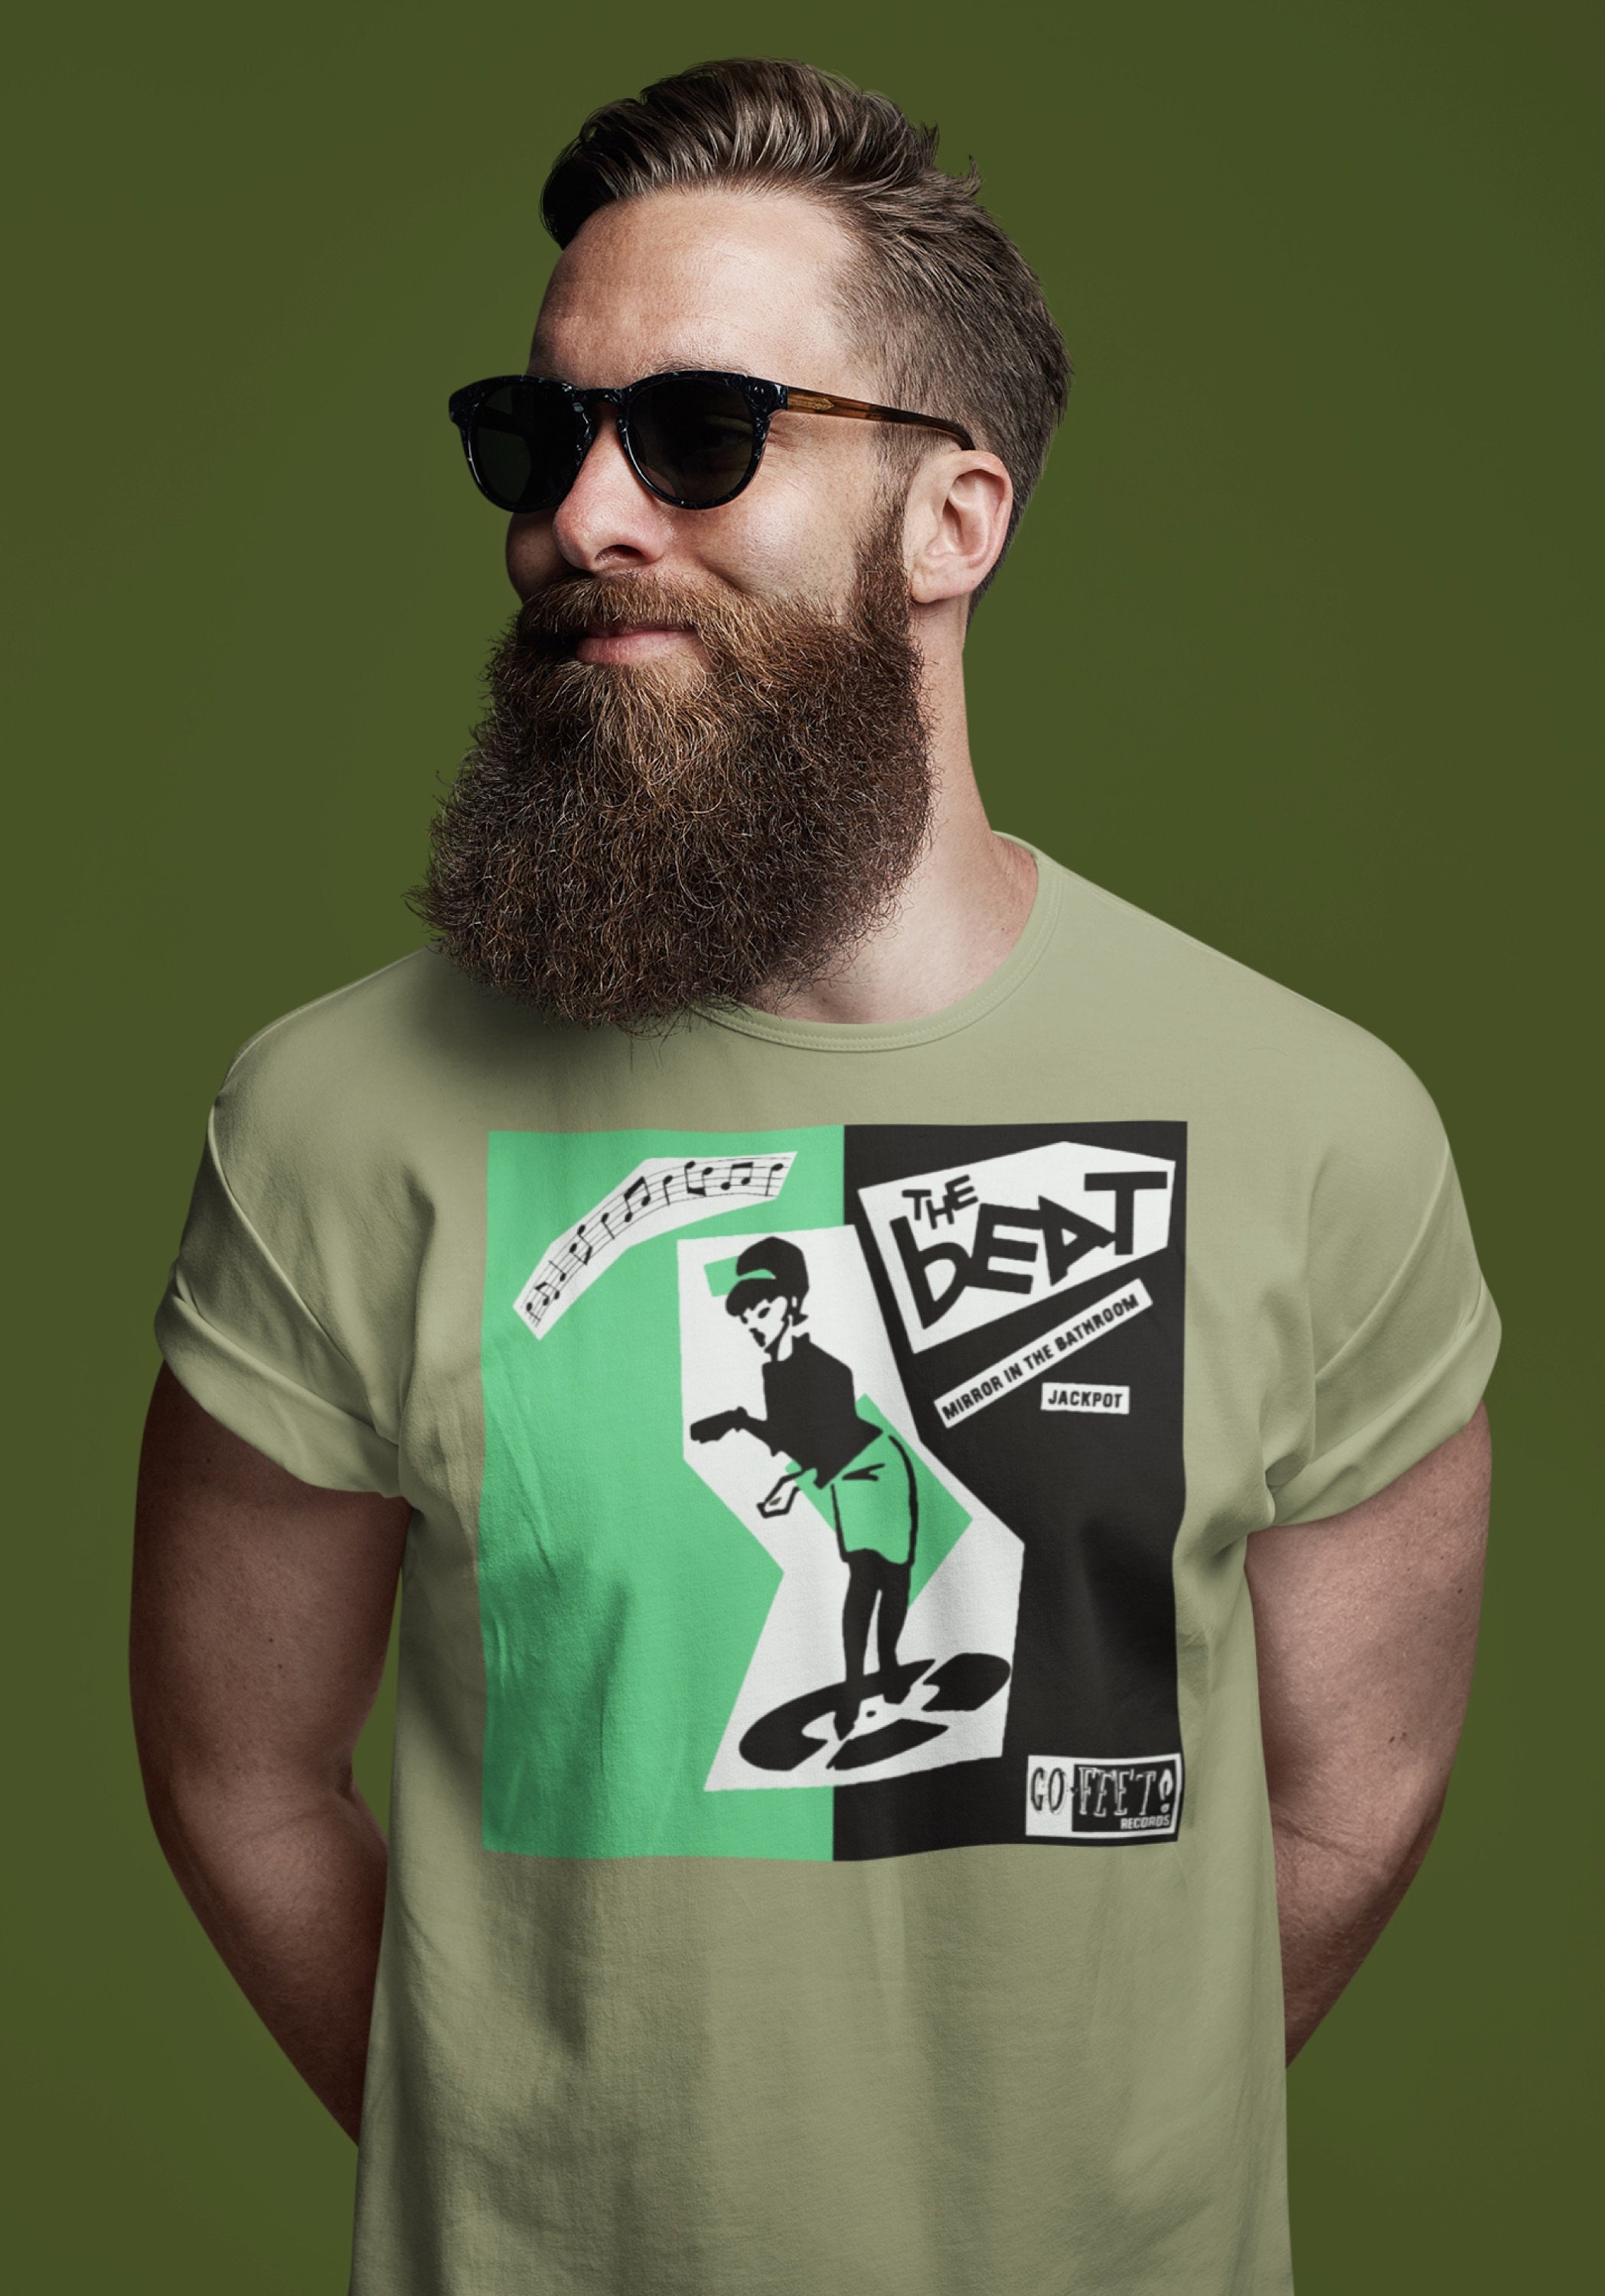 Beat T Shirt English UK 2 Tone Music Band Graphic - Etsy